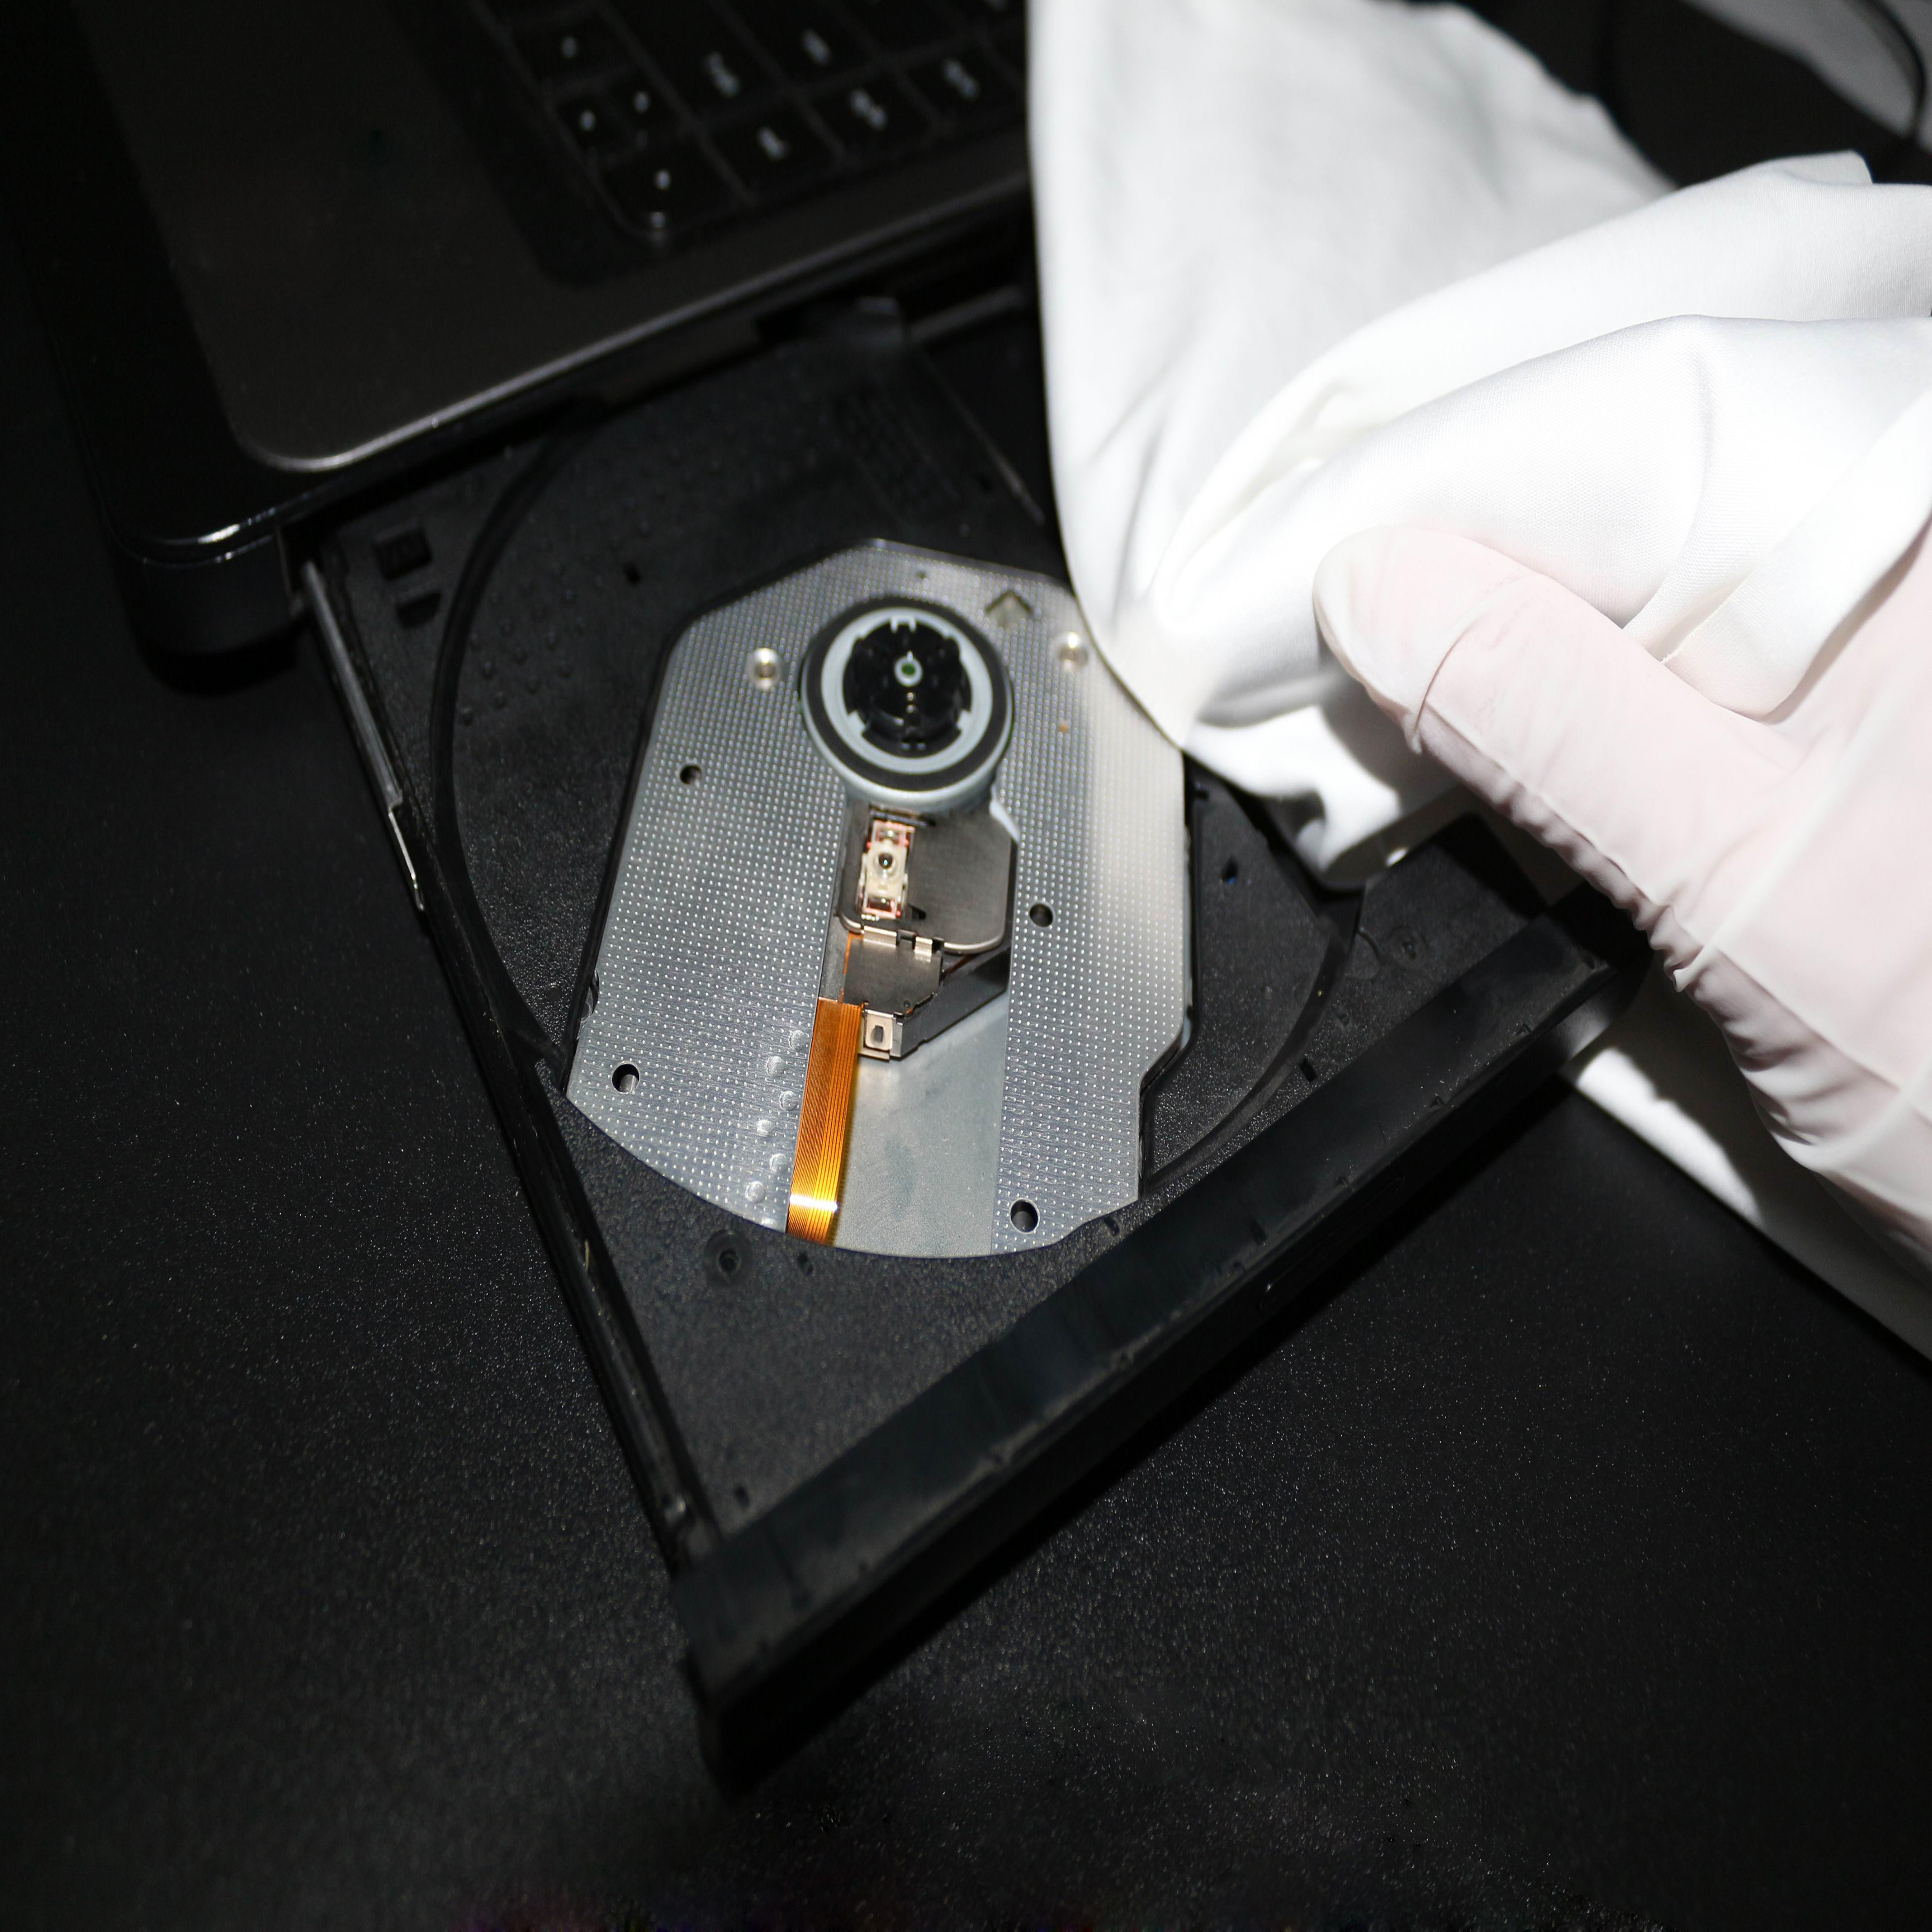 Borda selada ultrassônica do limpador de microfibra de nylon
